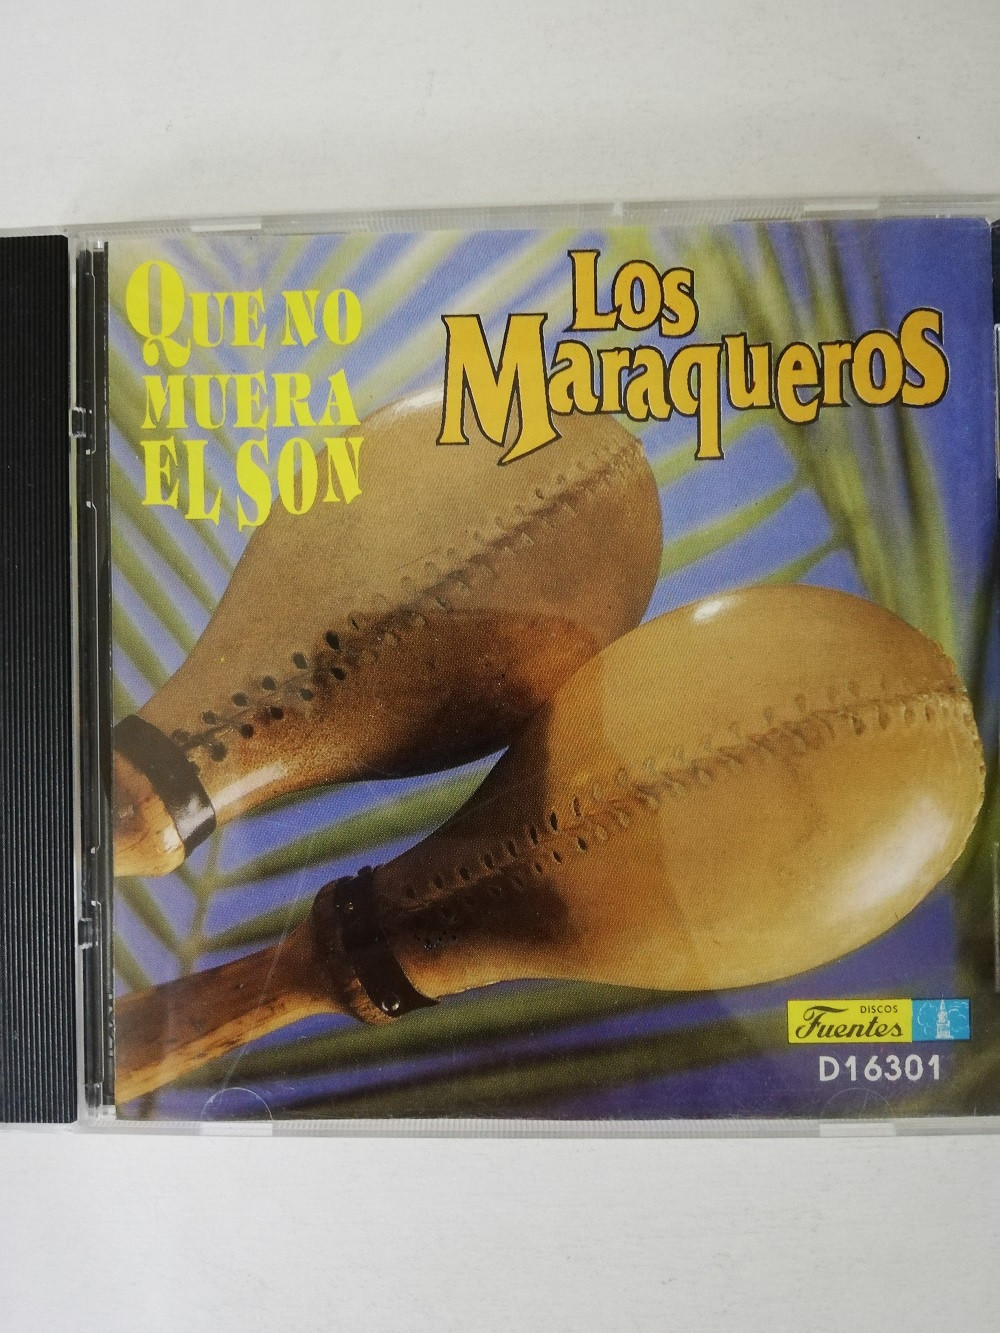 Imagen CD LOS MARAQUEROS - QUE NO MUERA EL SON